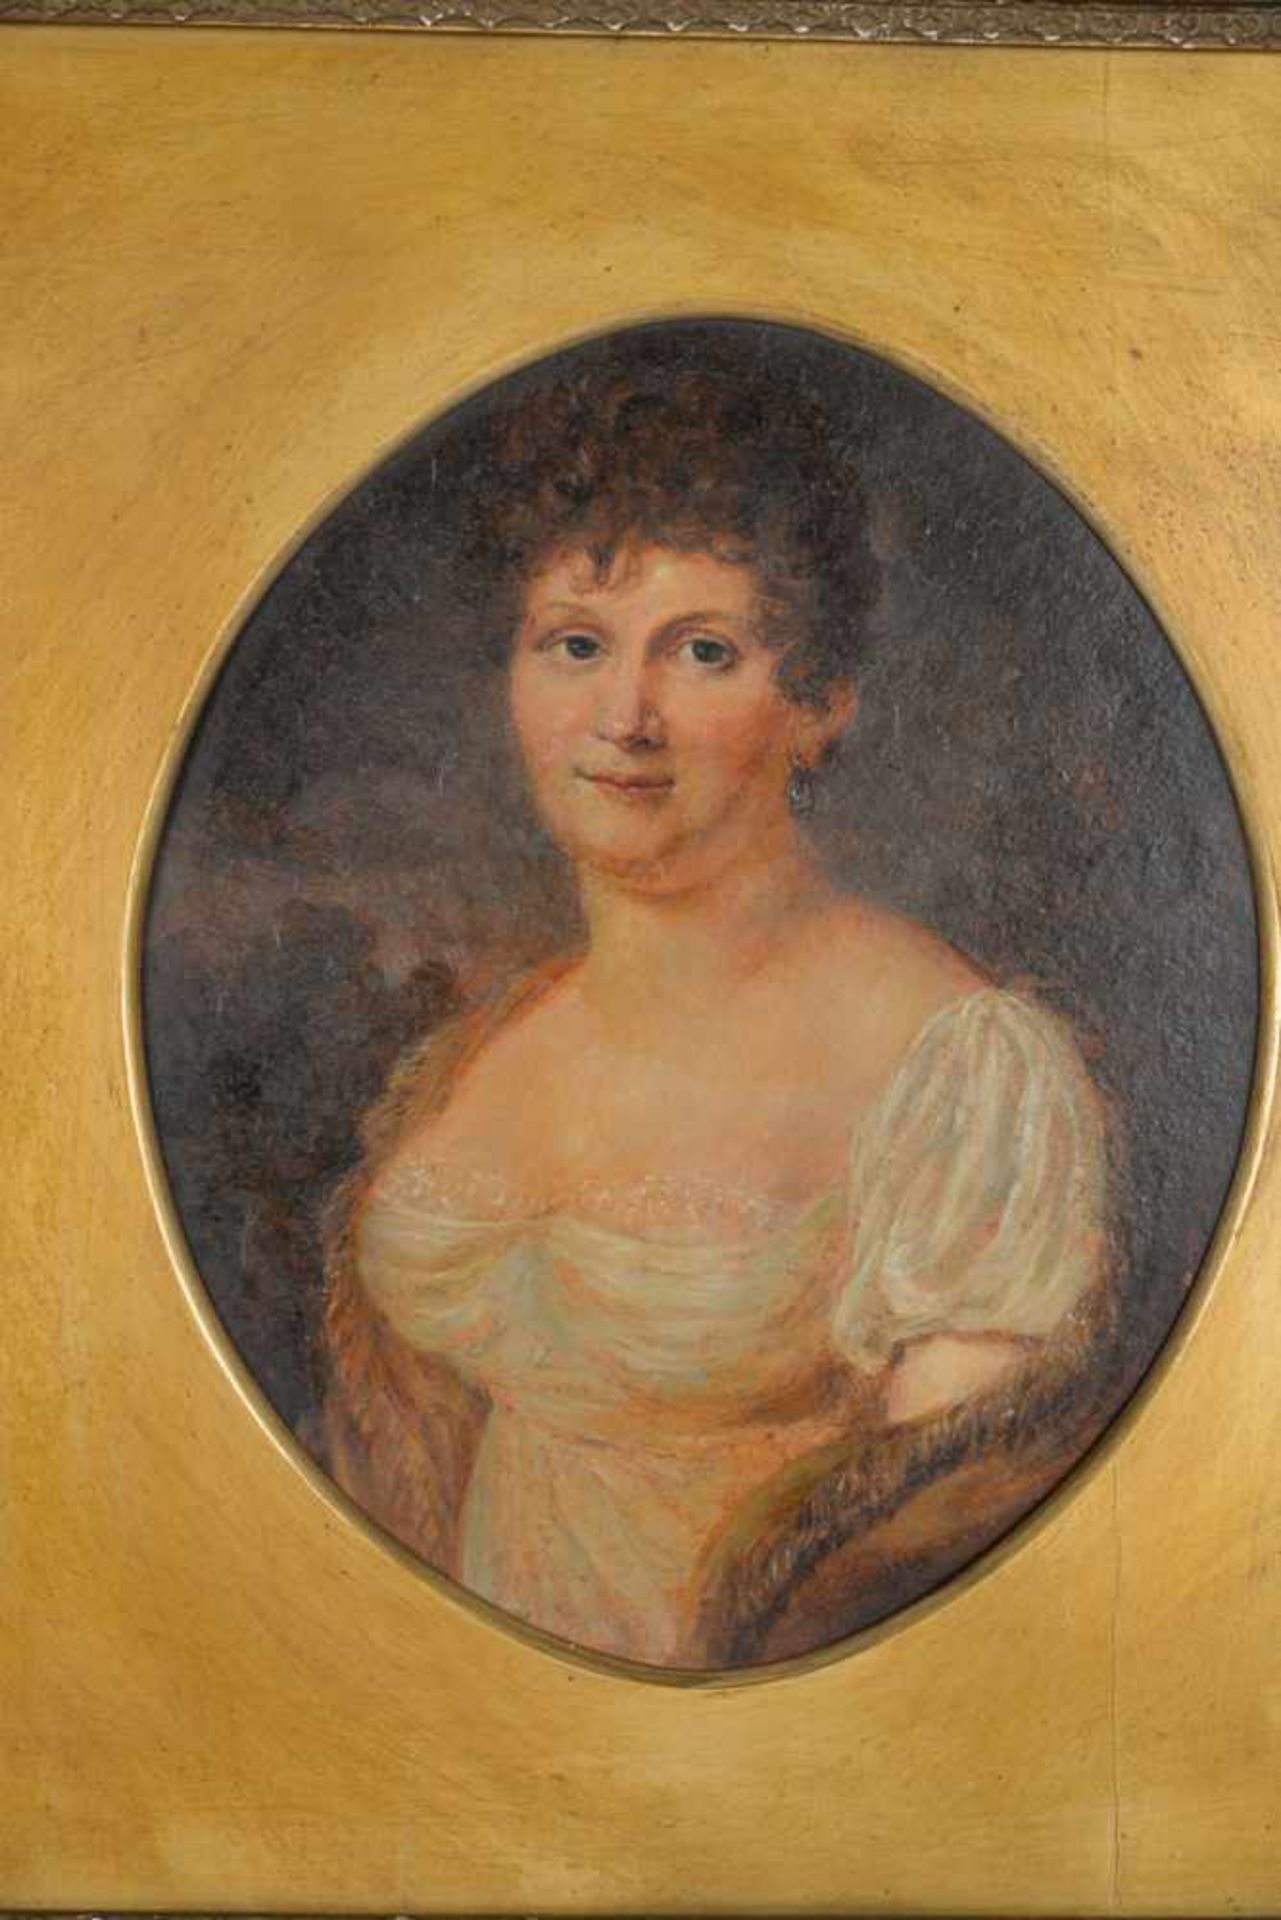 Brustporträt einer Dame mit Ohrring, wohl englisch.Öl auf Malplatte, Datierung um 1900, - Bild 5 aus 7